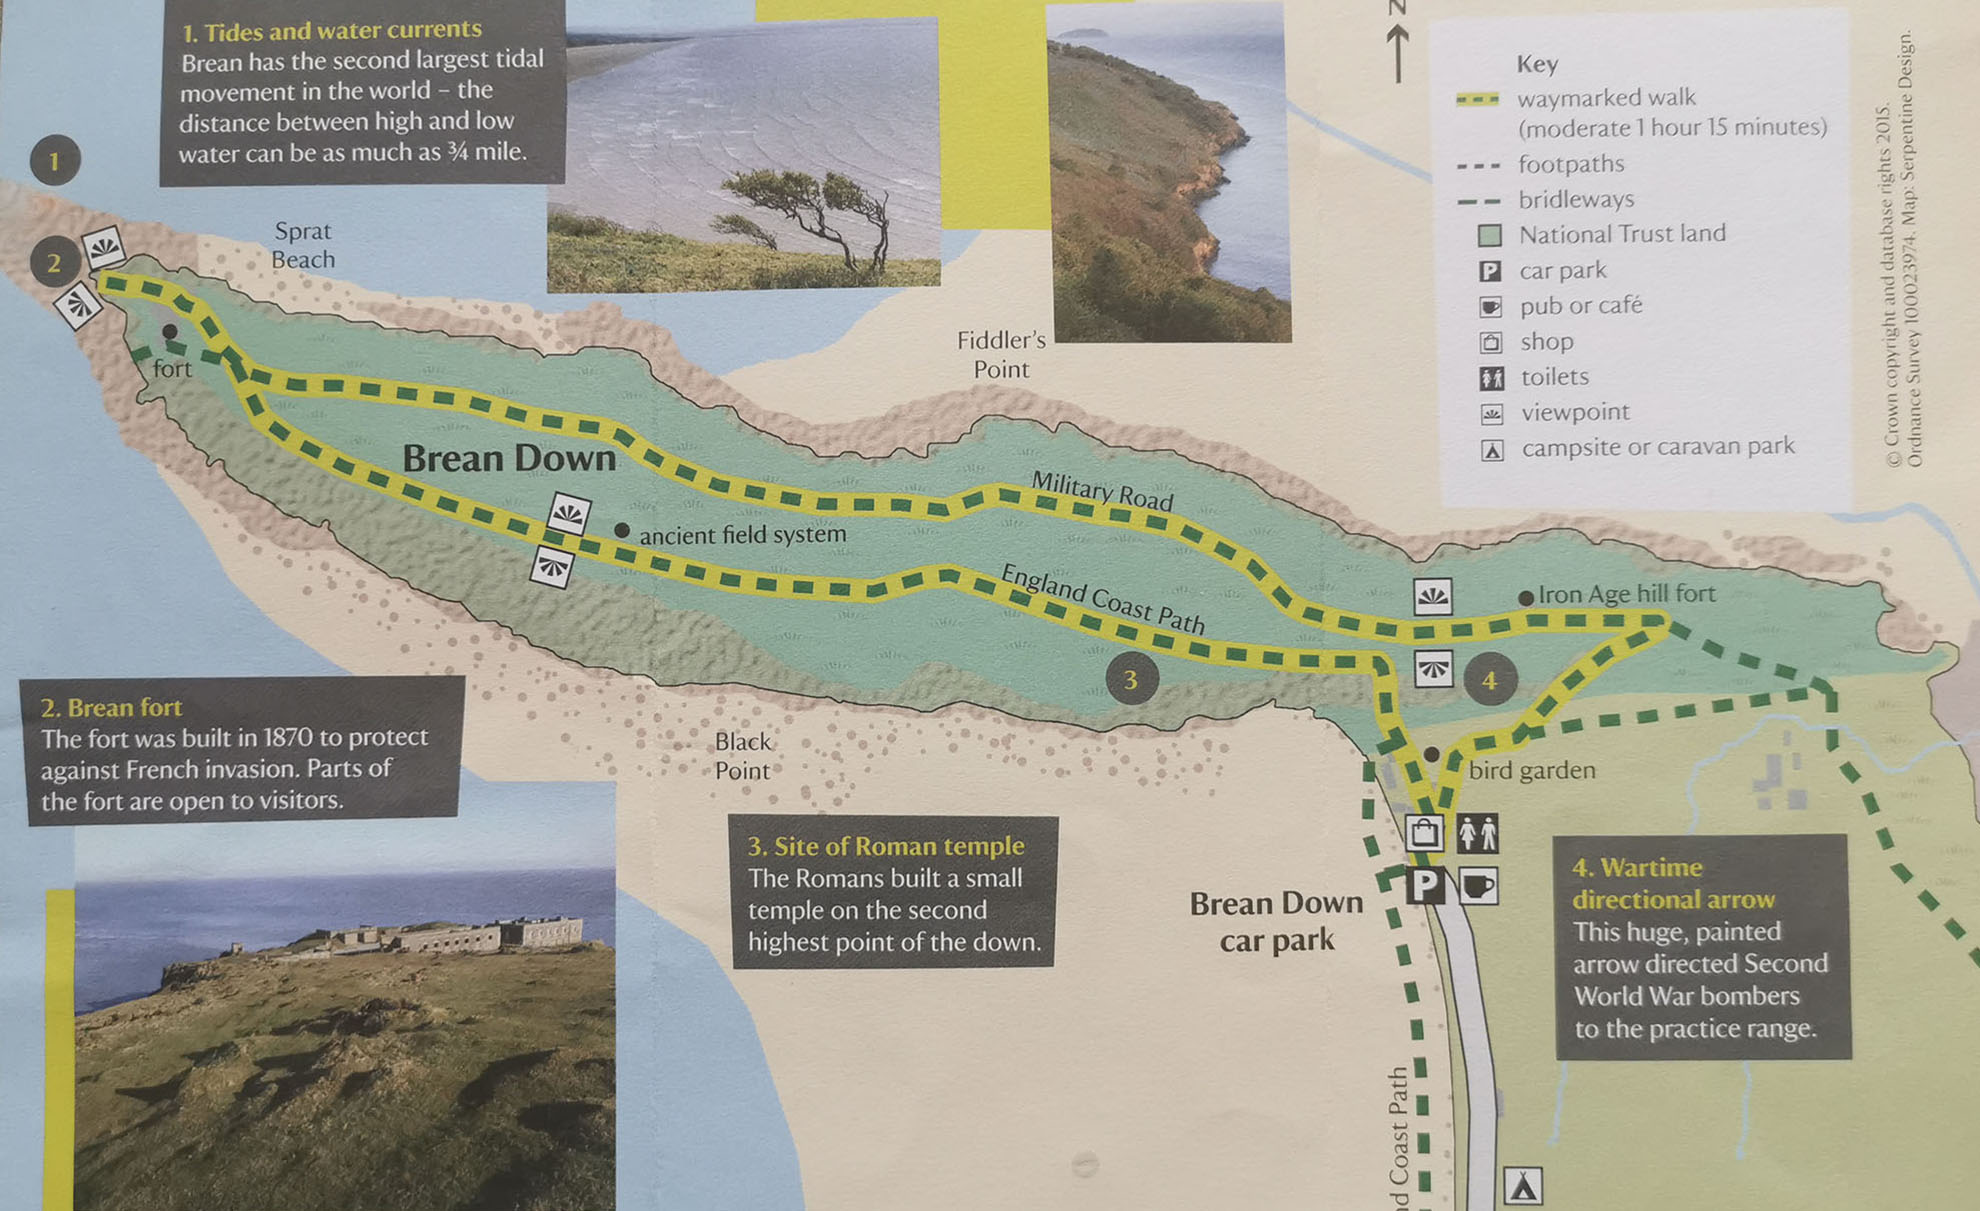 Brean Down Coastal Walk: map of walk